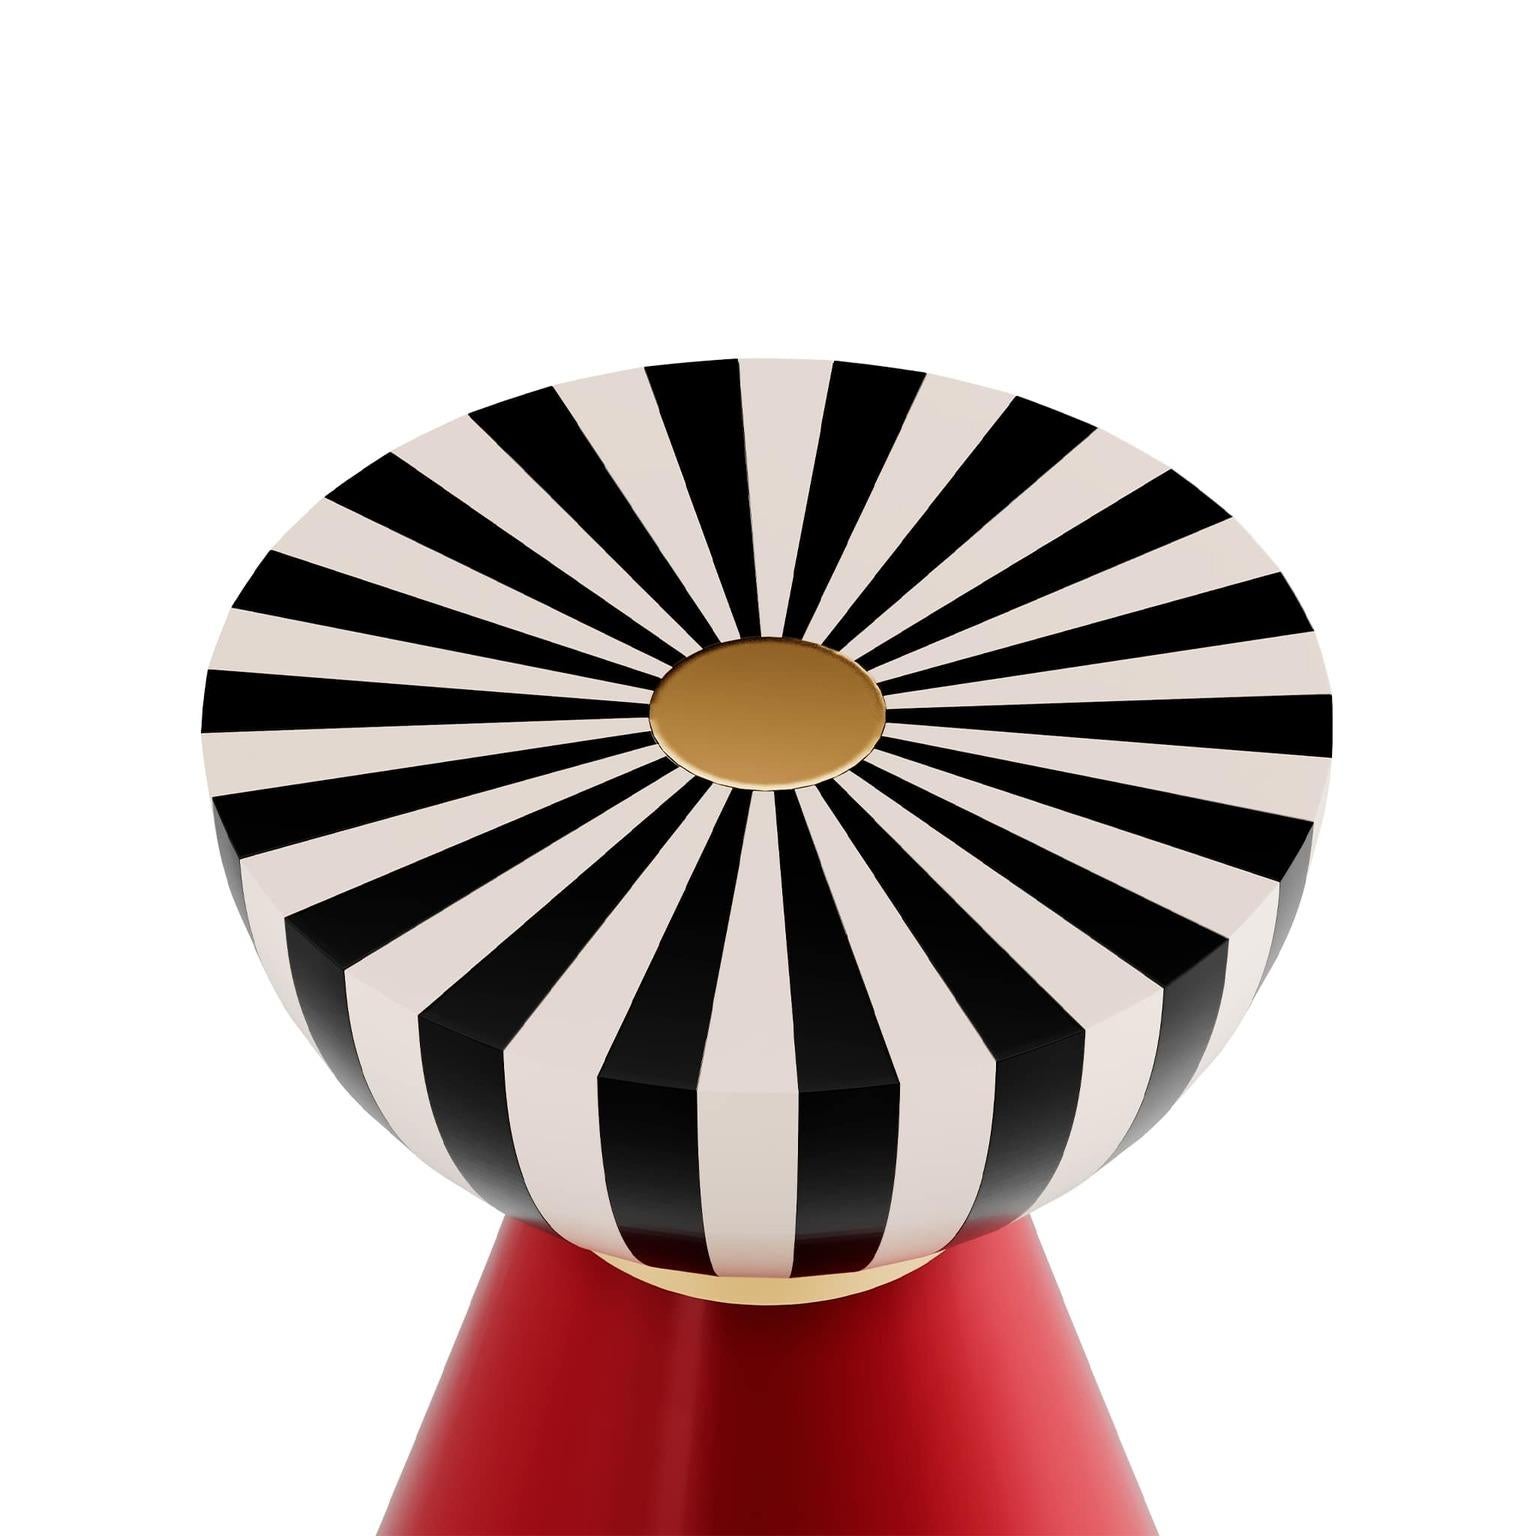 Moderner runder Beistelltisch Schwarze und weiße Platte, roter Sockel, Gold  Einzelheiten

Fuschia II Beistelltisch Ruby ist der ideale Cocktailtisch für Wohnräume mit skurriler Eleganz. Mit Schichten von mutigen Formen und kühnen Texturen. Der